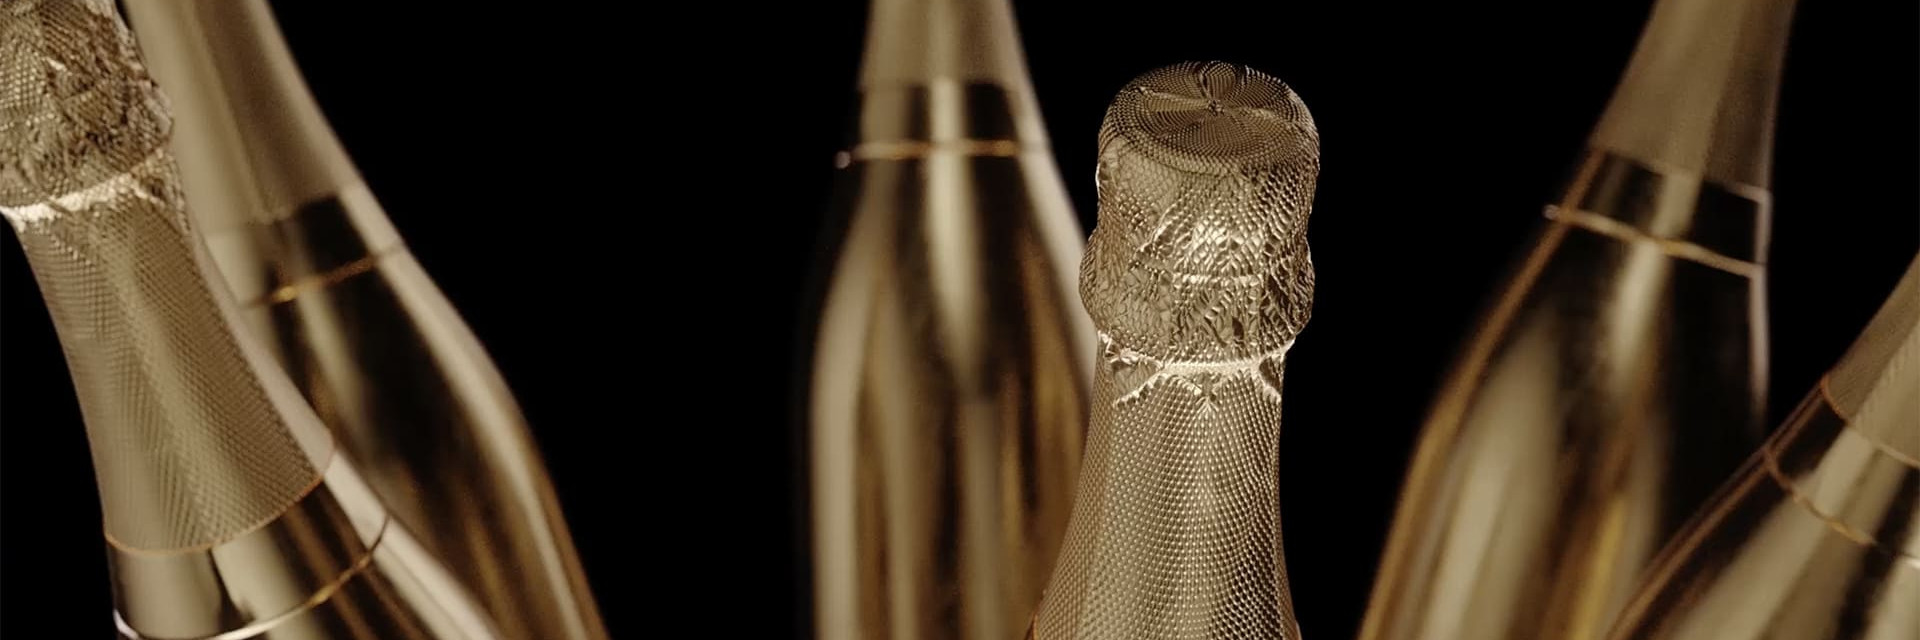 Champagner, ein romantisches Getränk schlechthin, Sinnbild des Festes, wird traditionell bei allen Anlässen (Weihnachten, Neujahr, Geburtstage, Hochzeiten, Taufen, Diplome usw.) verkostet.